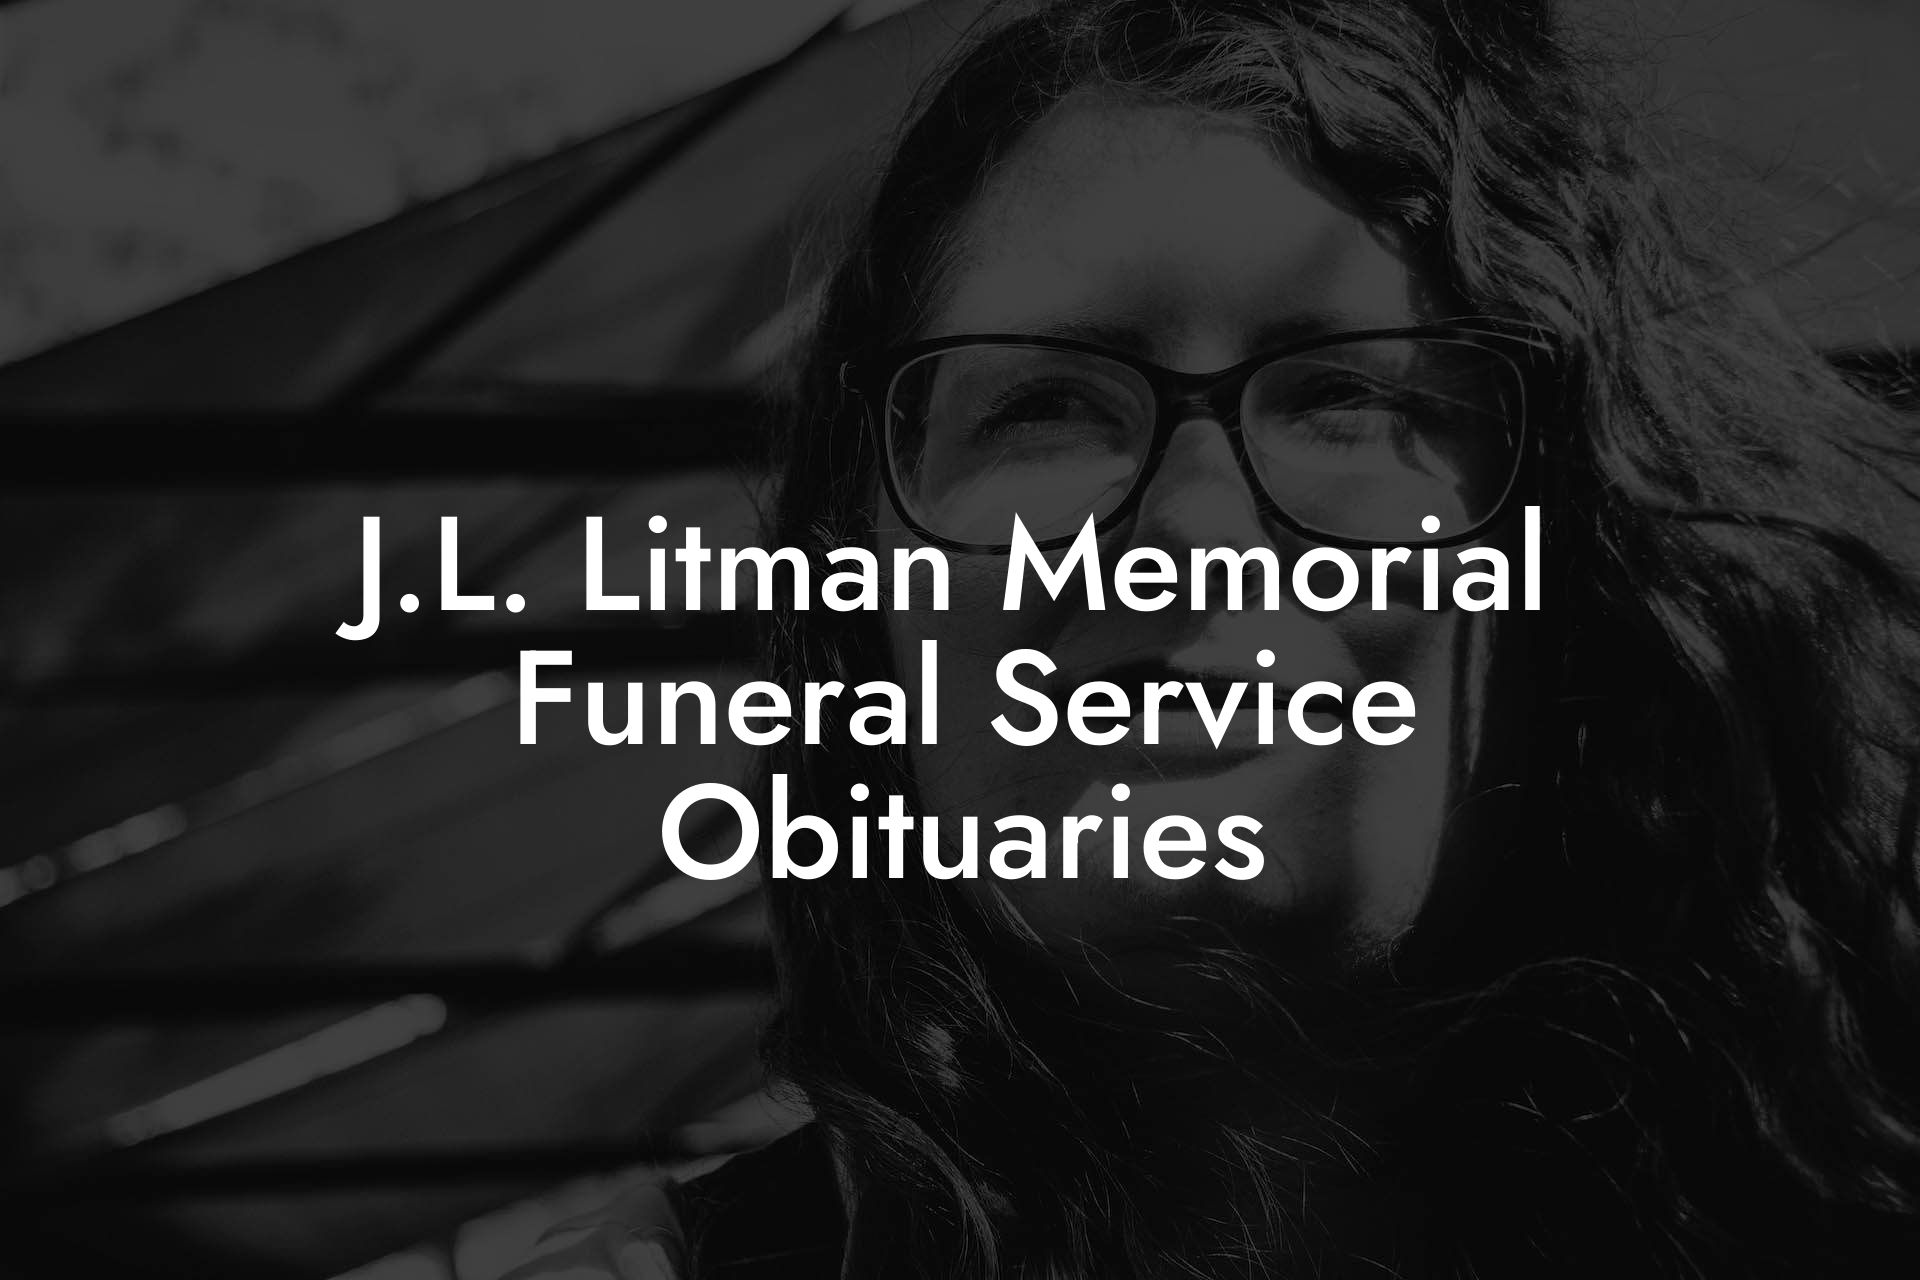 J.L. Litman Memorial Funeral Service Obituaries